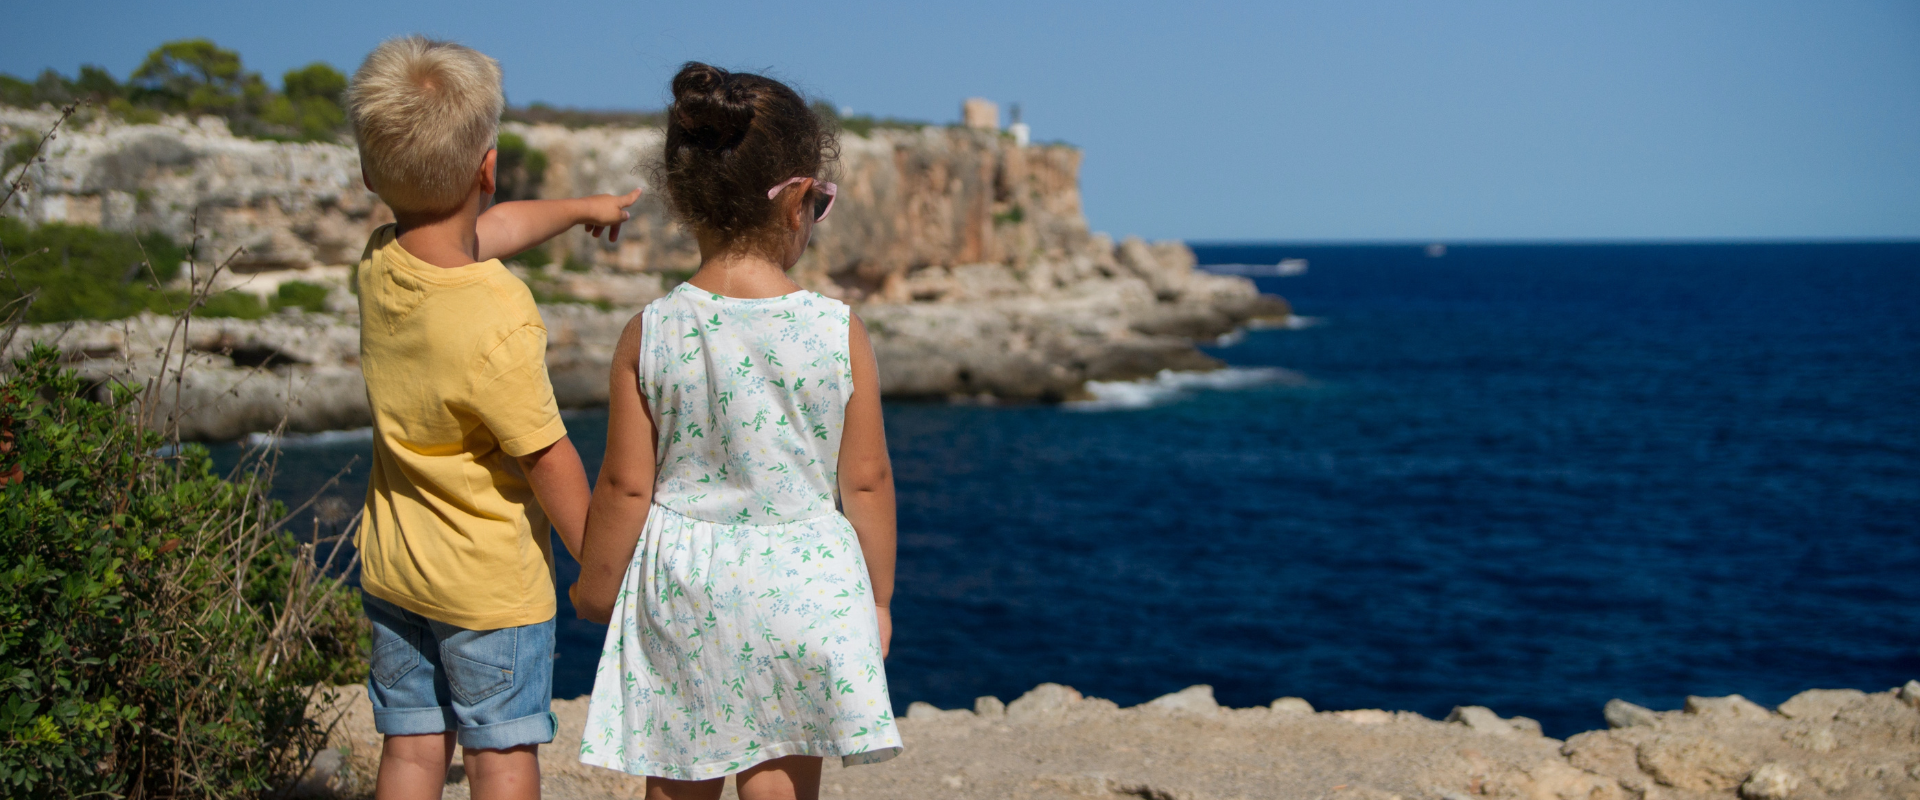 5 Tips voor stressvrij reizen met kinderen